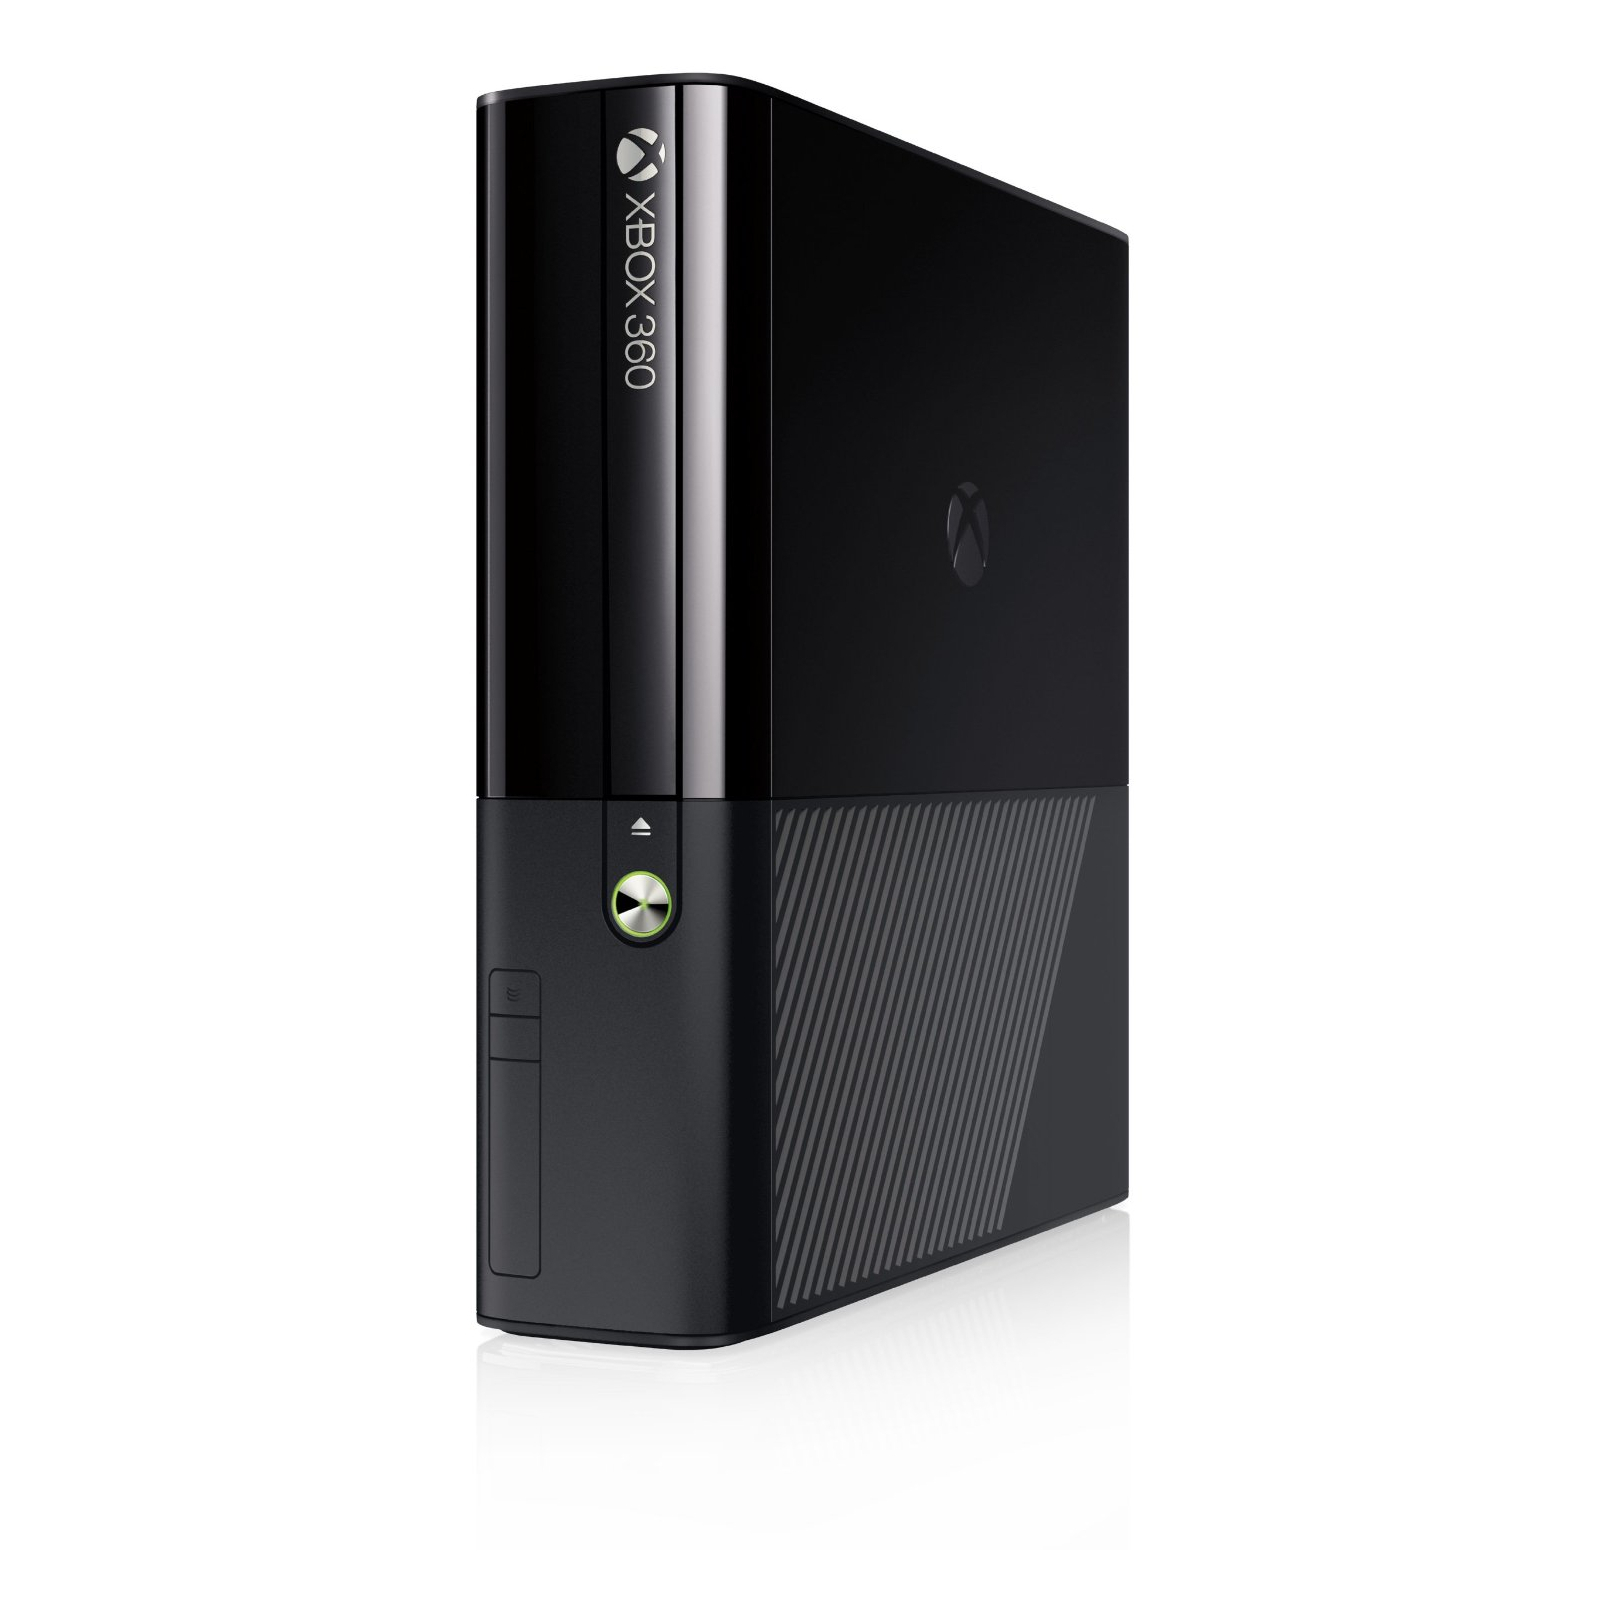 Игровая консоль Microsoft Xbox 360 250GB Console (XBOX360SLIM250GBNG) изображение 3